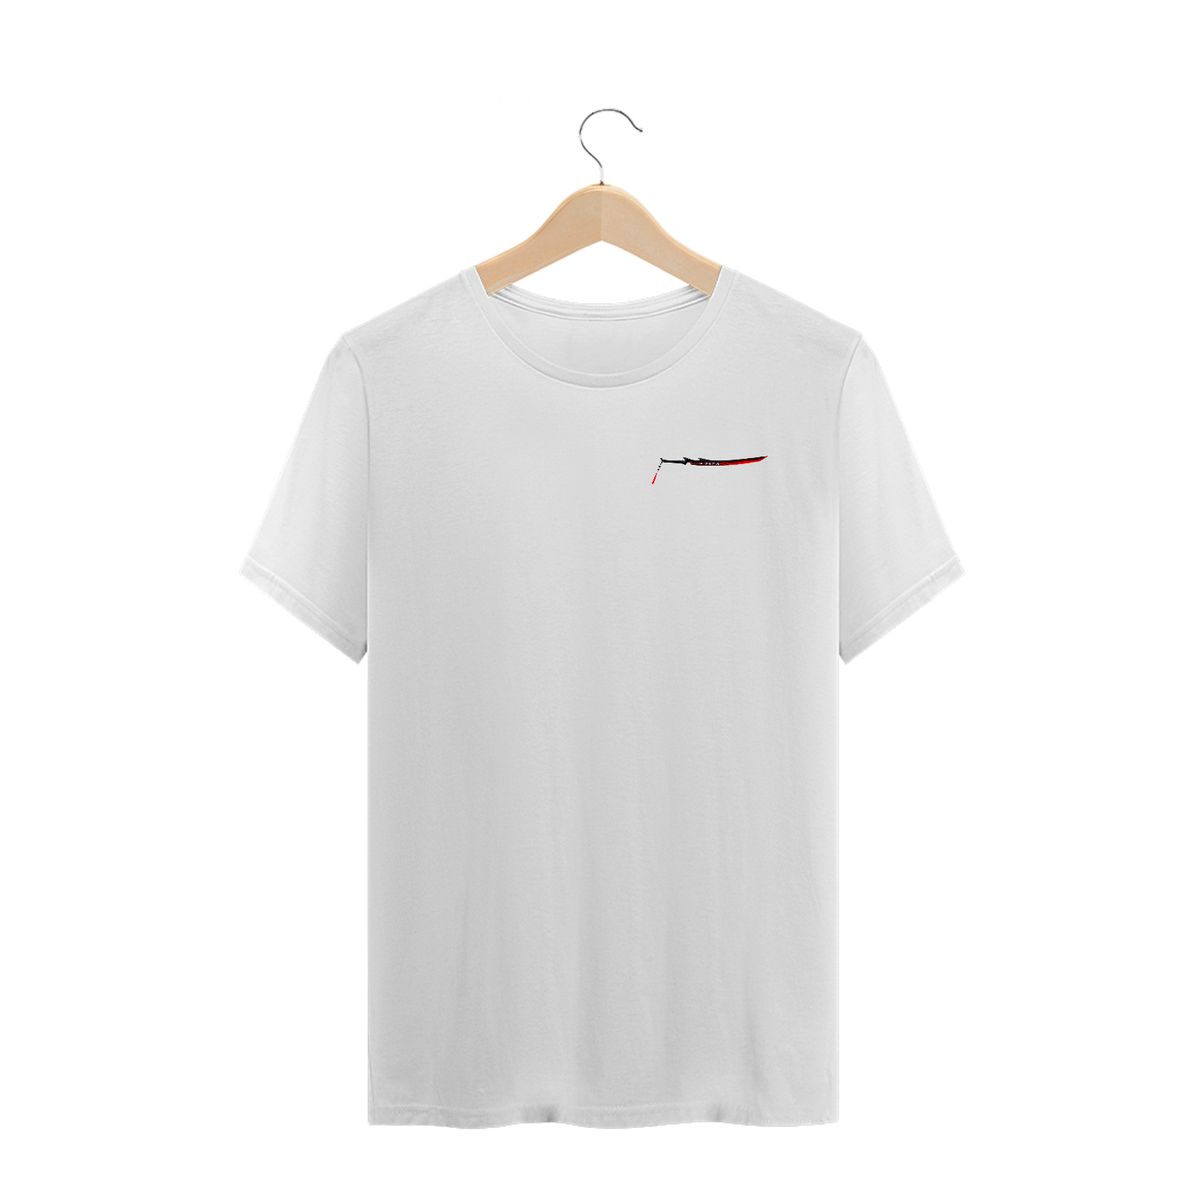 Nome do produto: Camiseta Yone Desenho - Branca